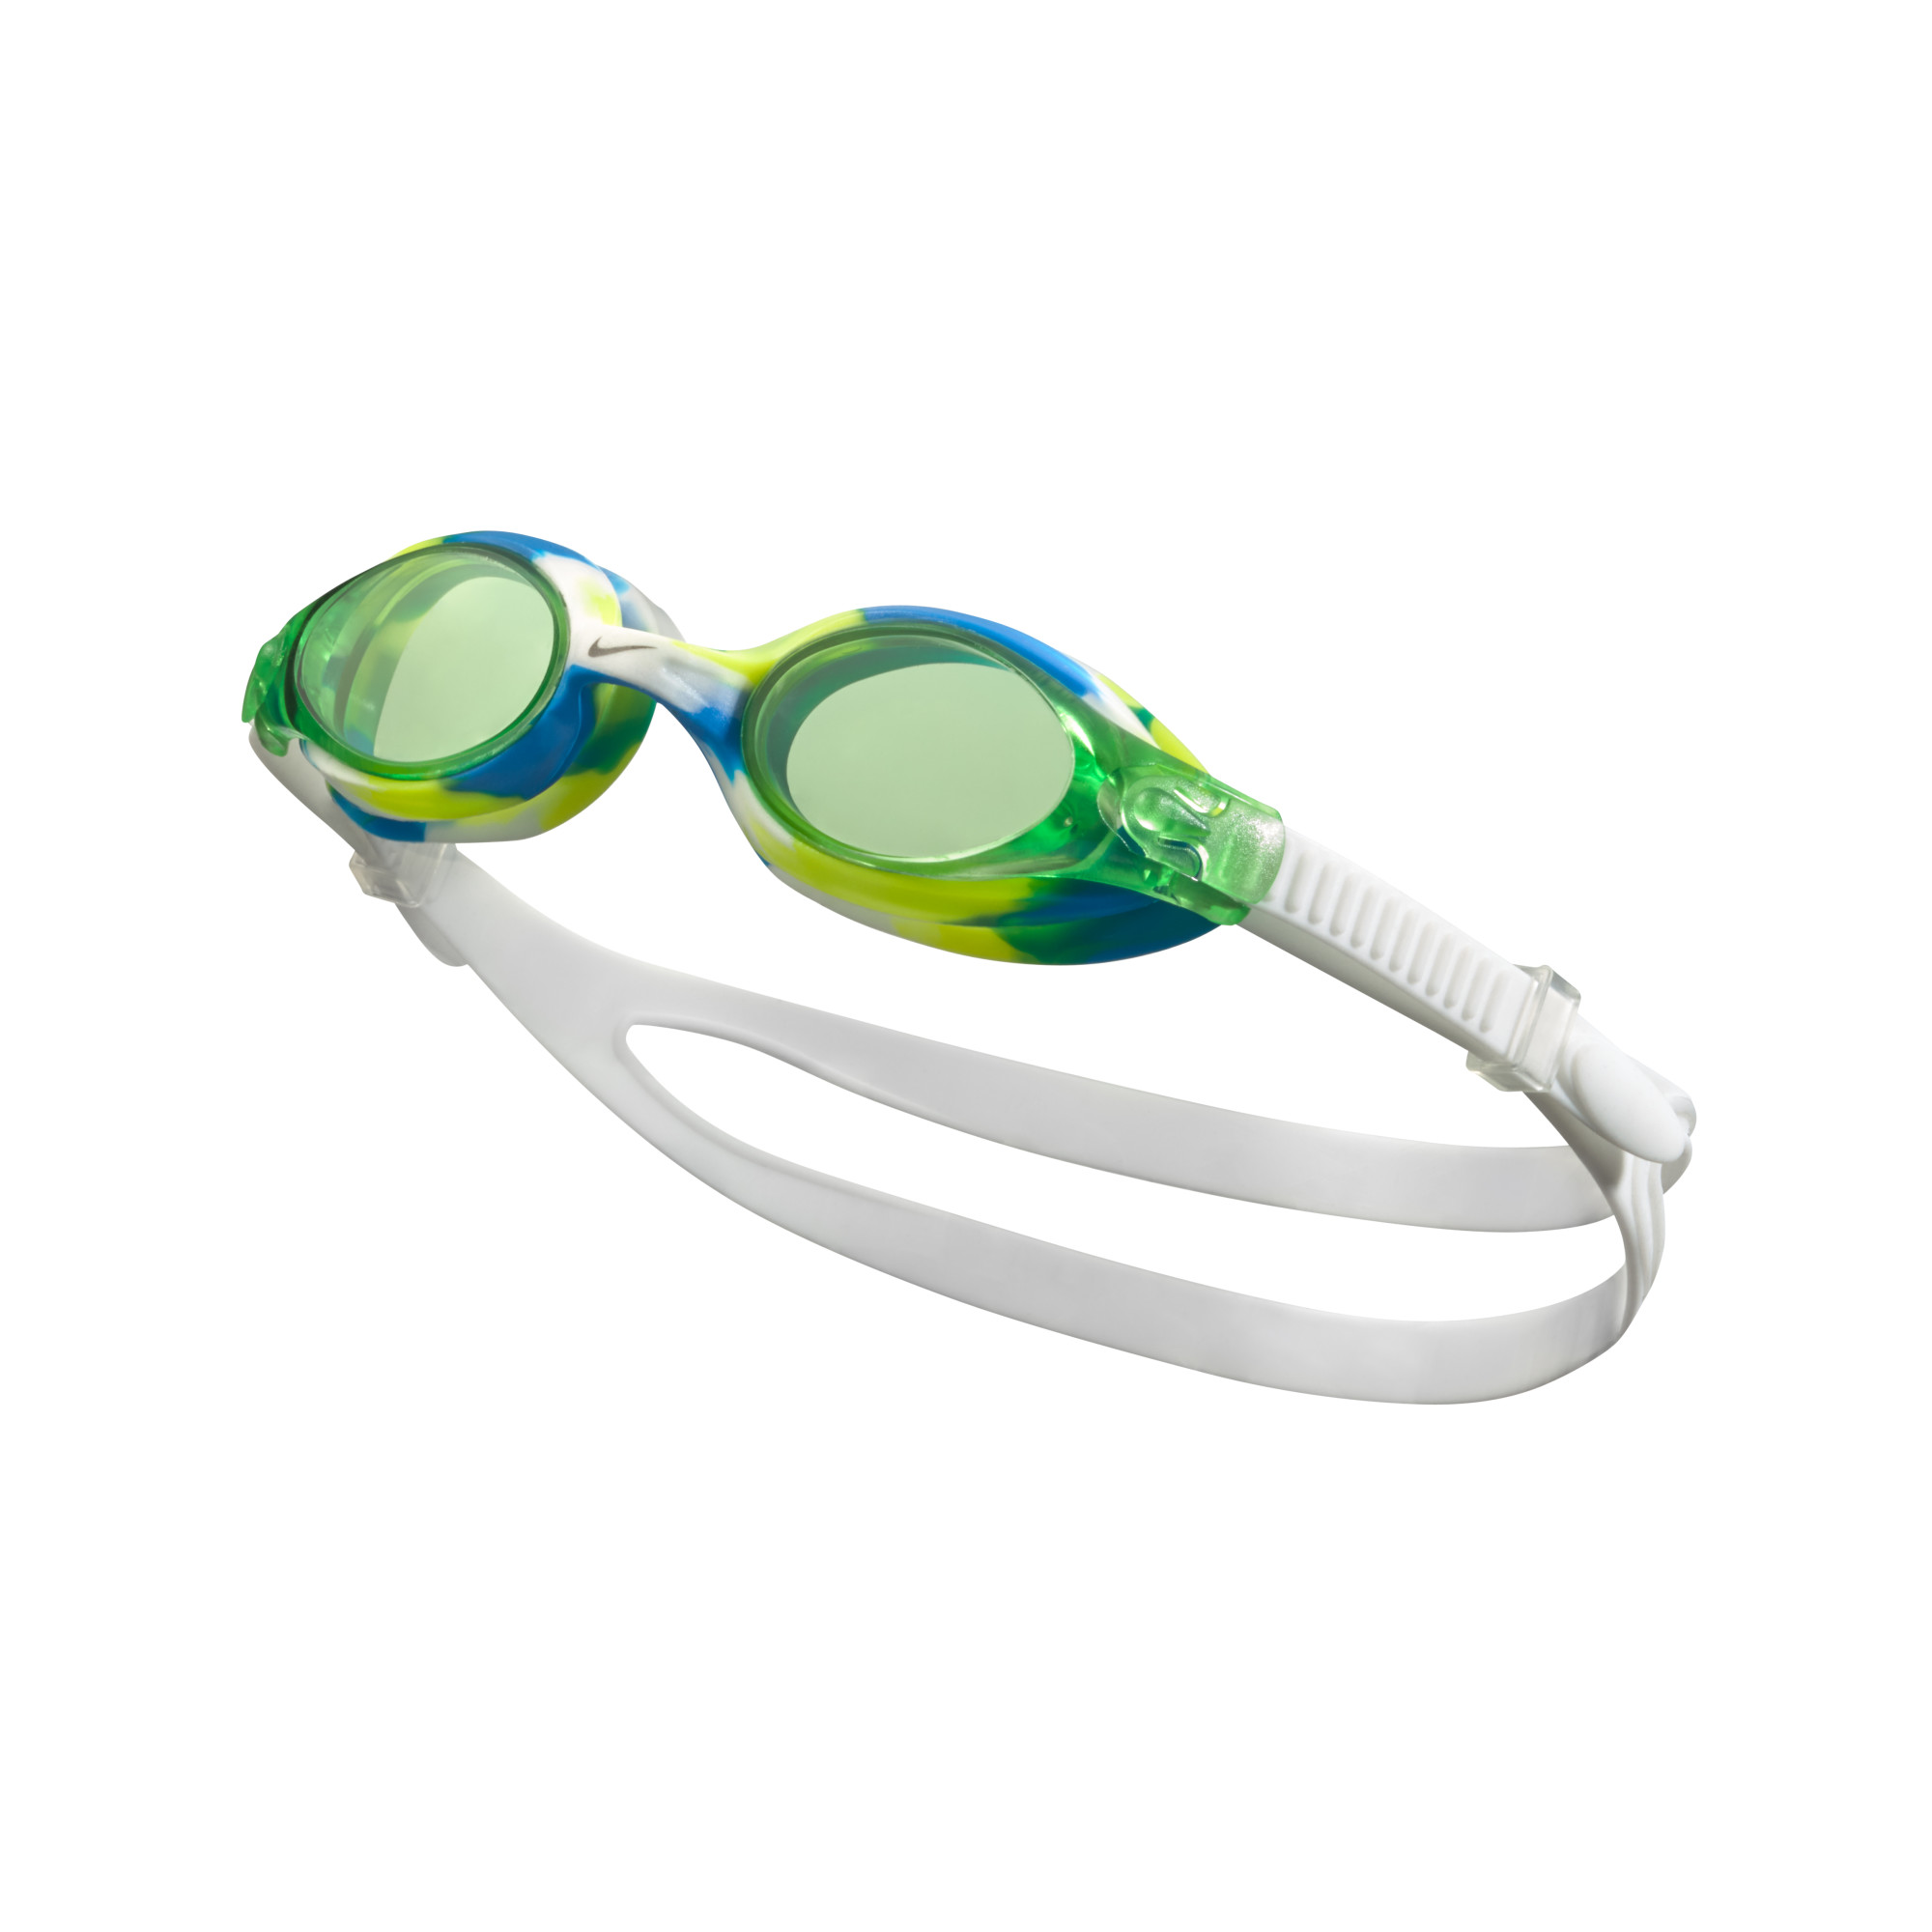 Очки для плавания детские Nike Swim Nike Lil' Swoosh Kids' Youth Goggle зеленый